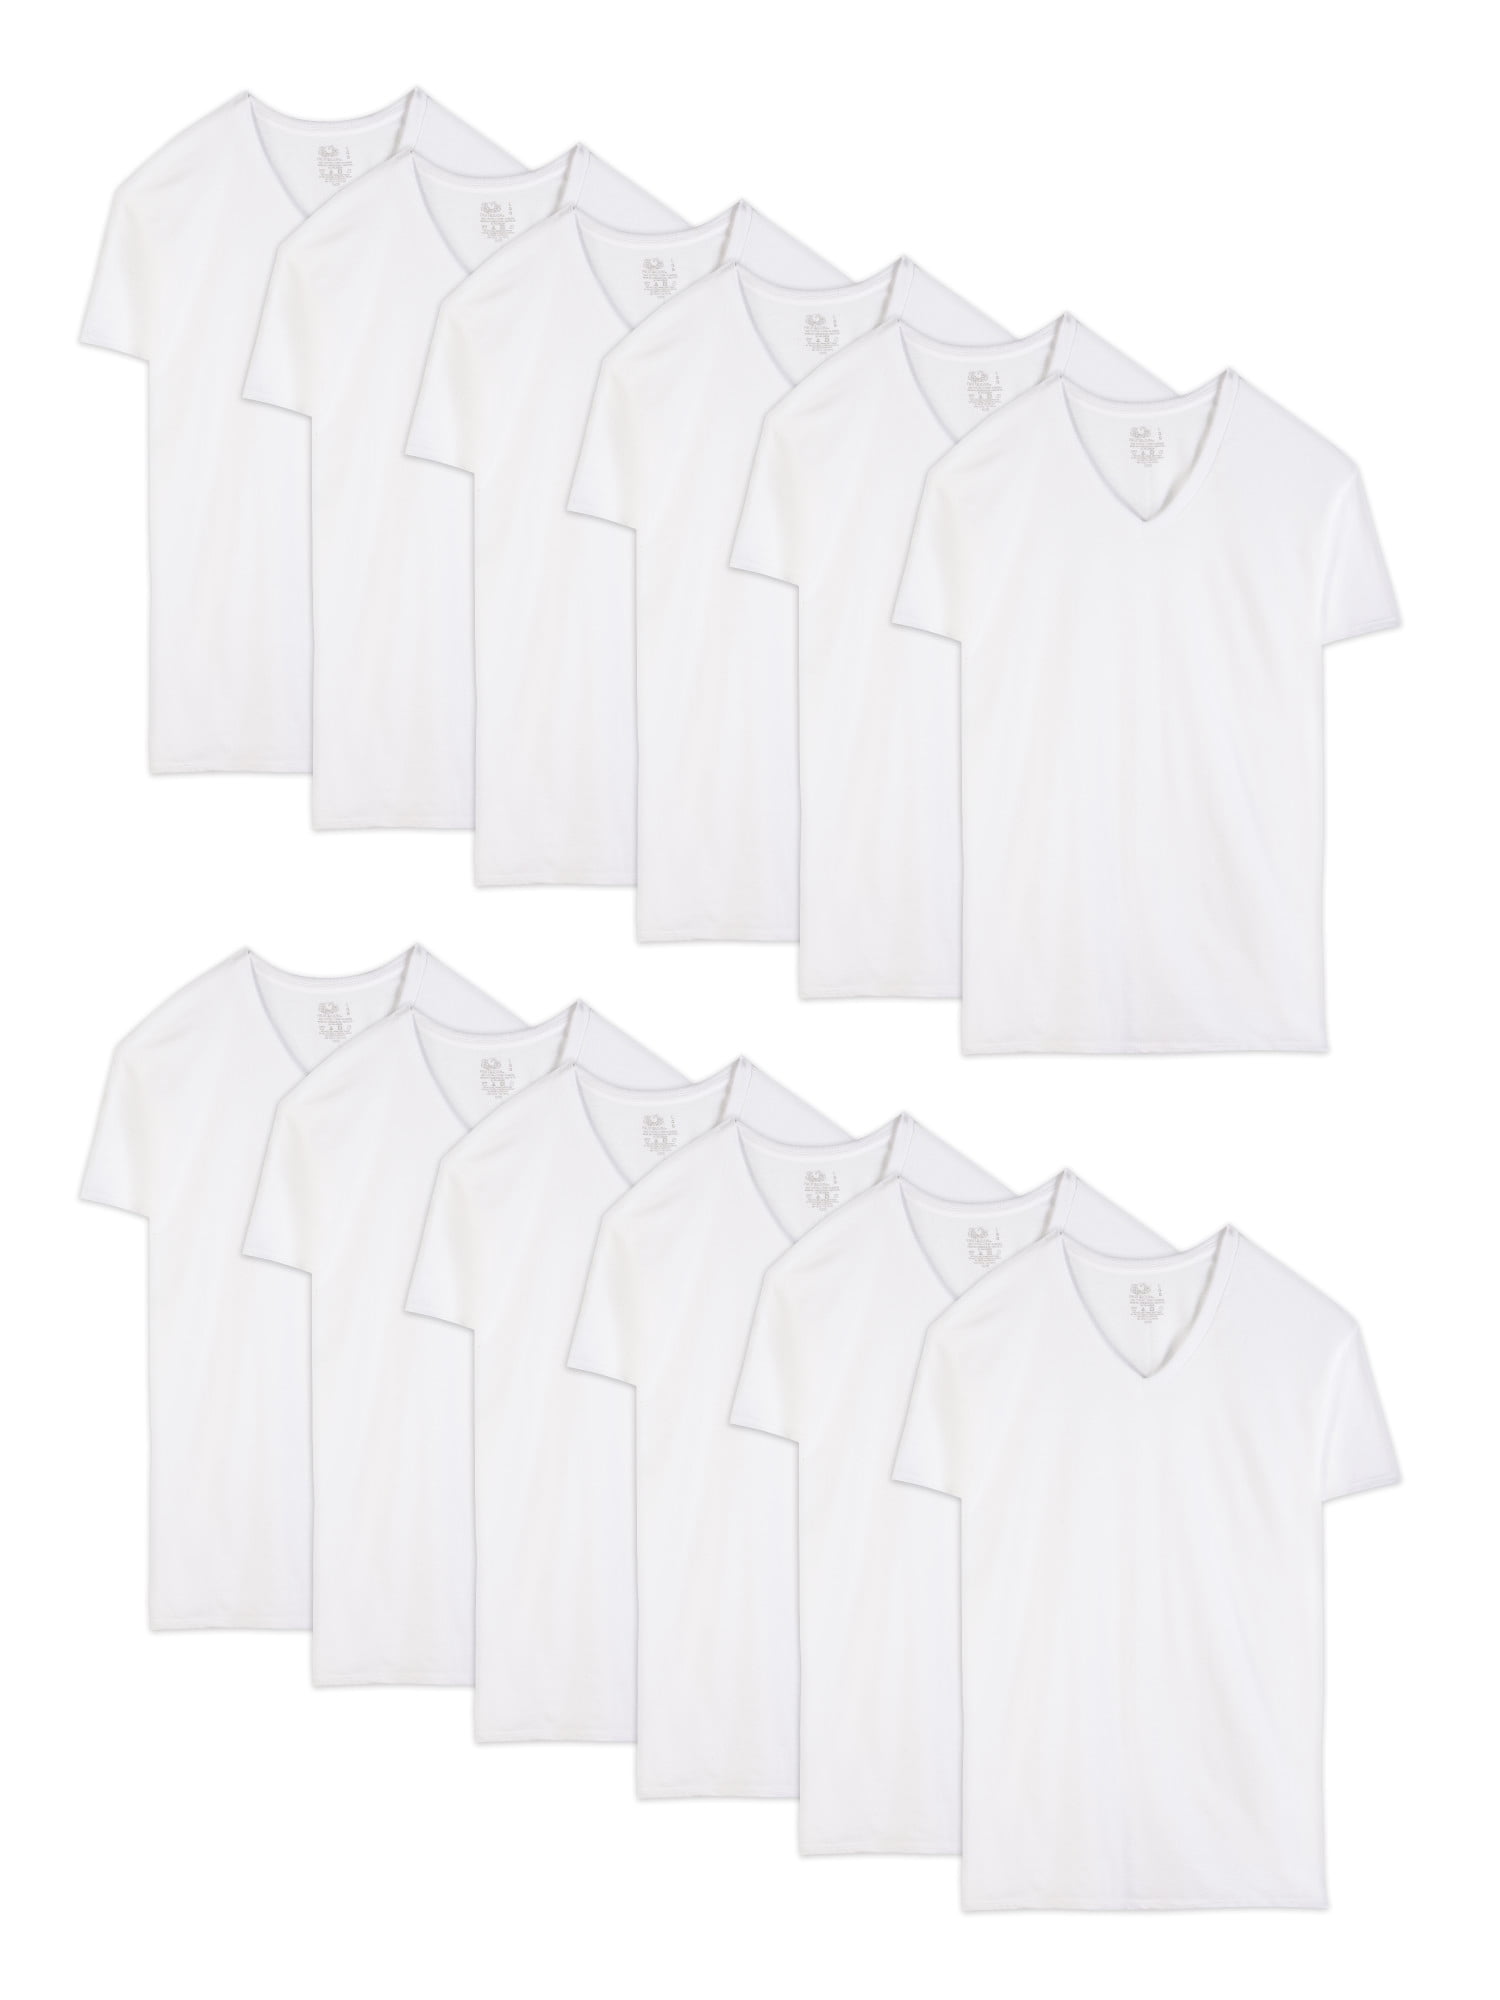 Fruit of the Loom Men's Short Sleeve White V-Neck T-Shirts, 6+6 Bonus ...